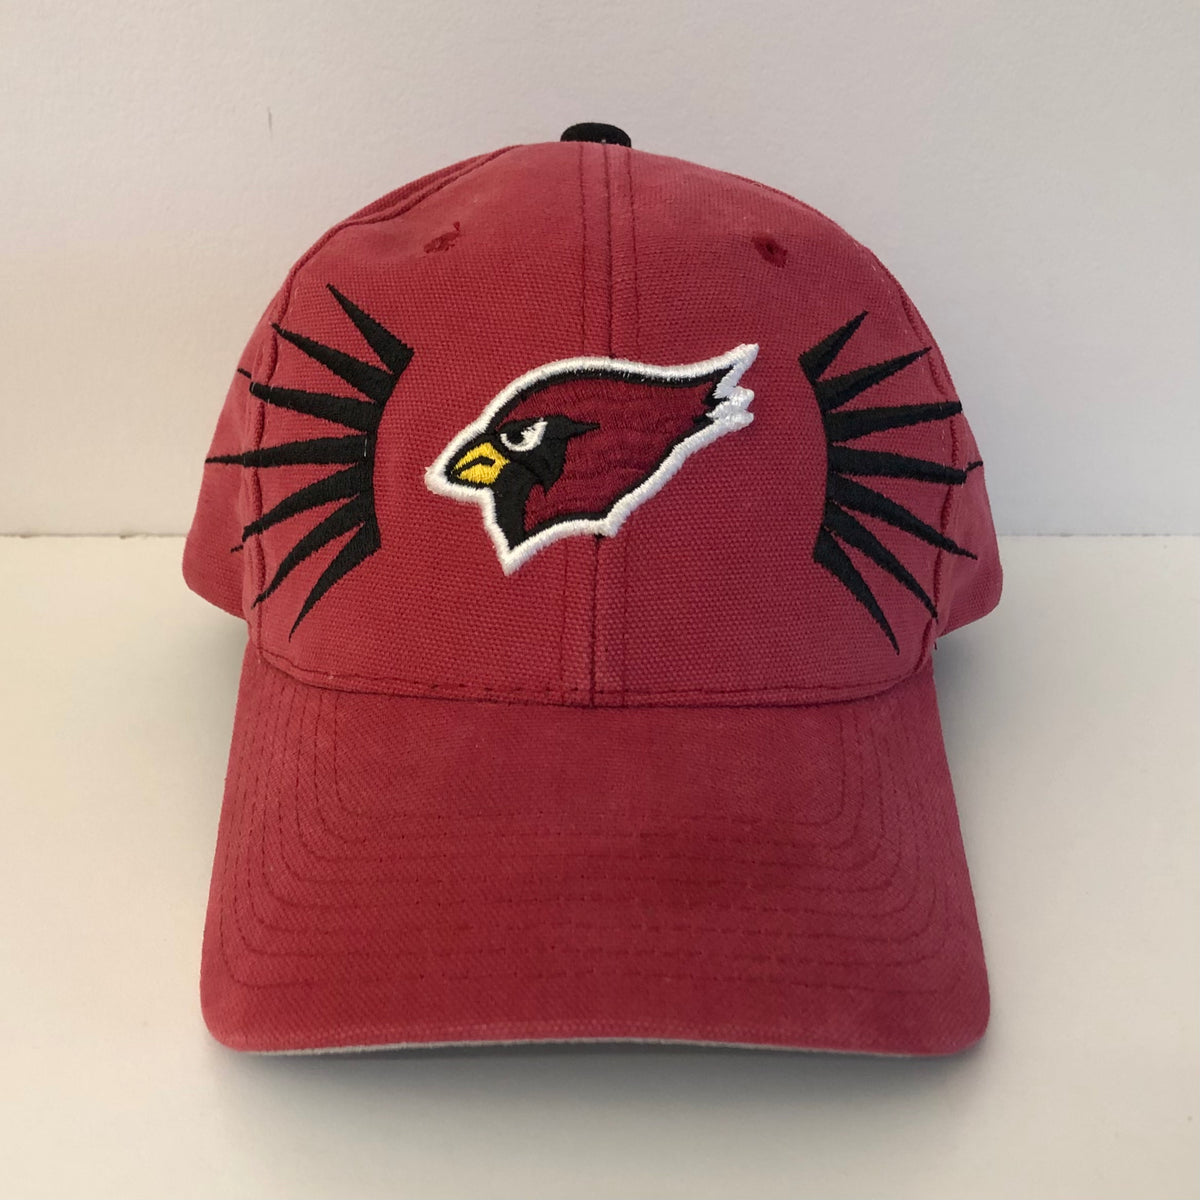 arizona cardinals baseball cap